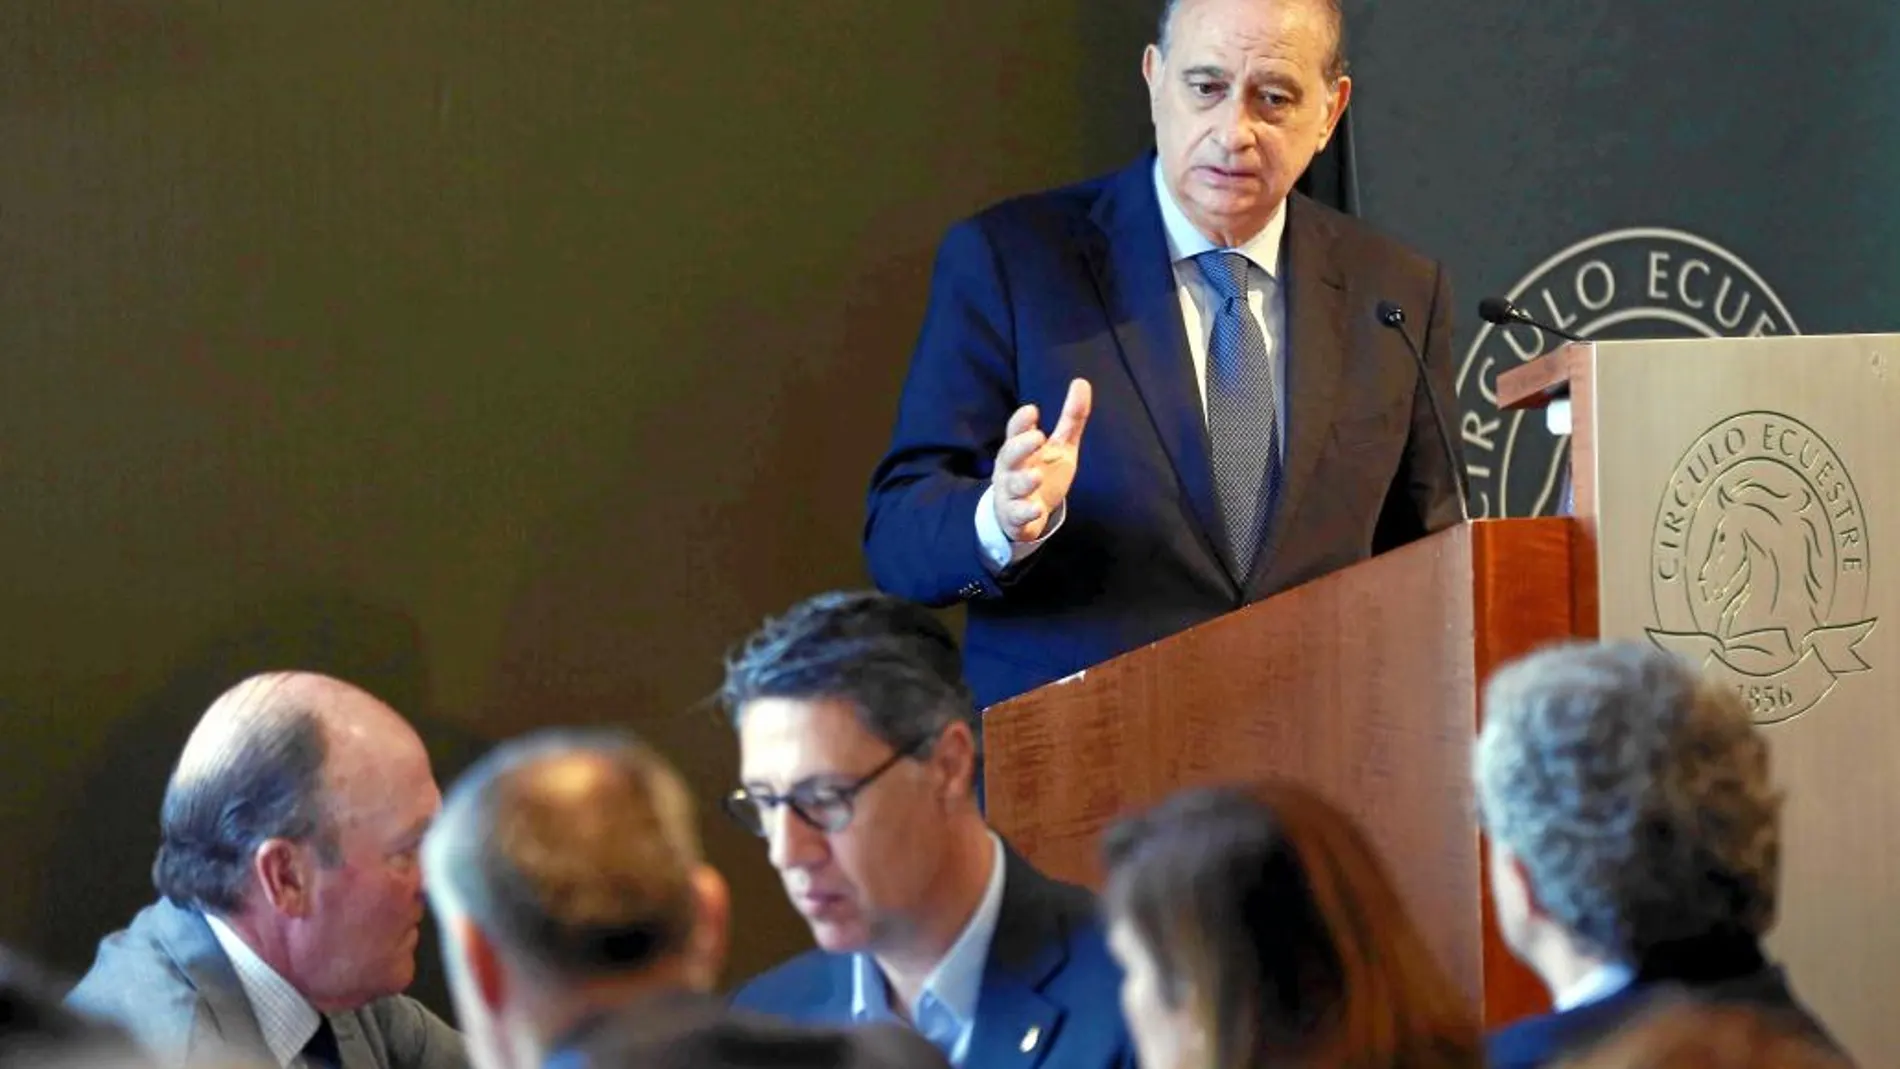 El ministro del Interior en funciones, Jorge Fernández Díaz, ayer en el Circulo Ecuestre, durante su conferencia